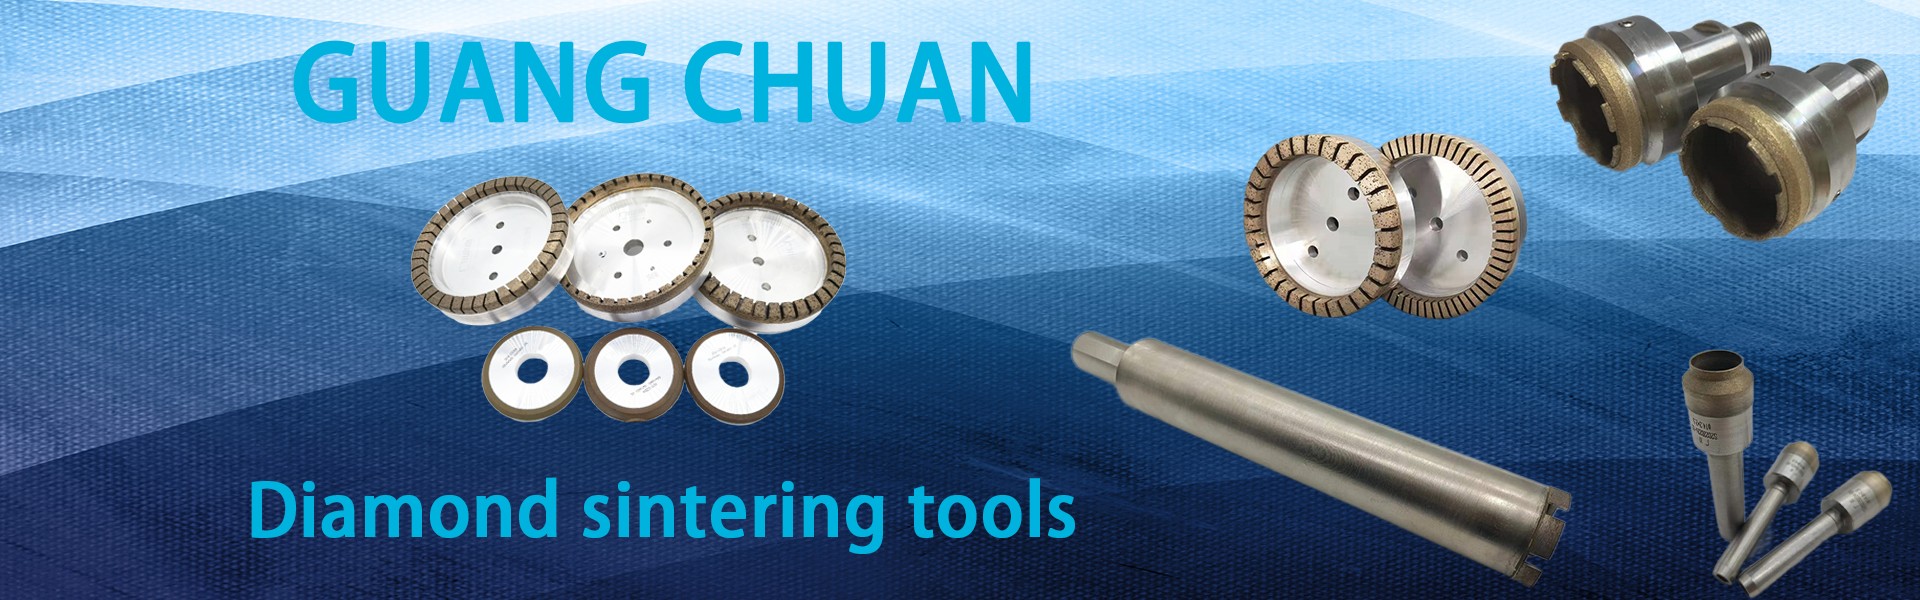 Колеса алмазных шлифовальных колес, алмазный инструмент, сверлильные биты,Dongguan Guangchuan Abrasives Technology Co., Ltd